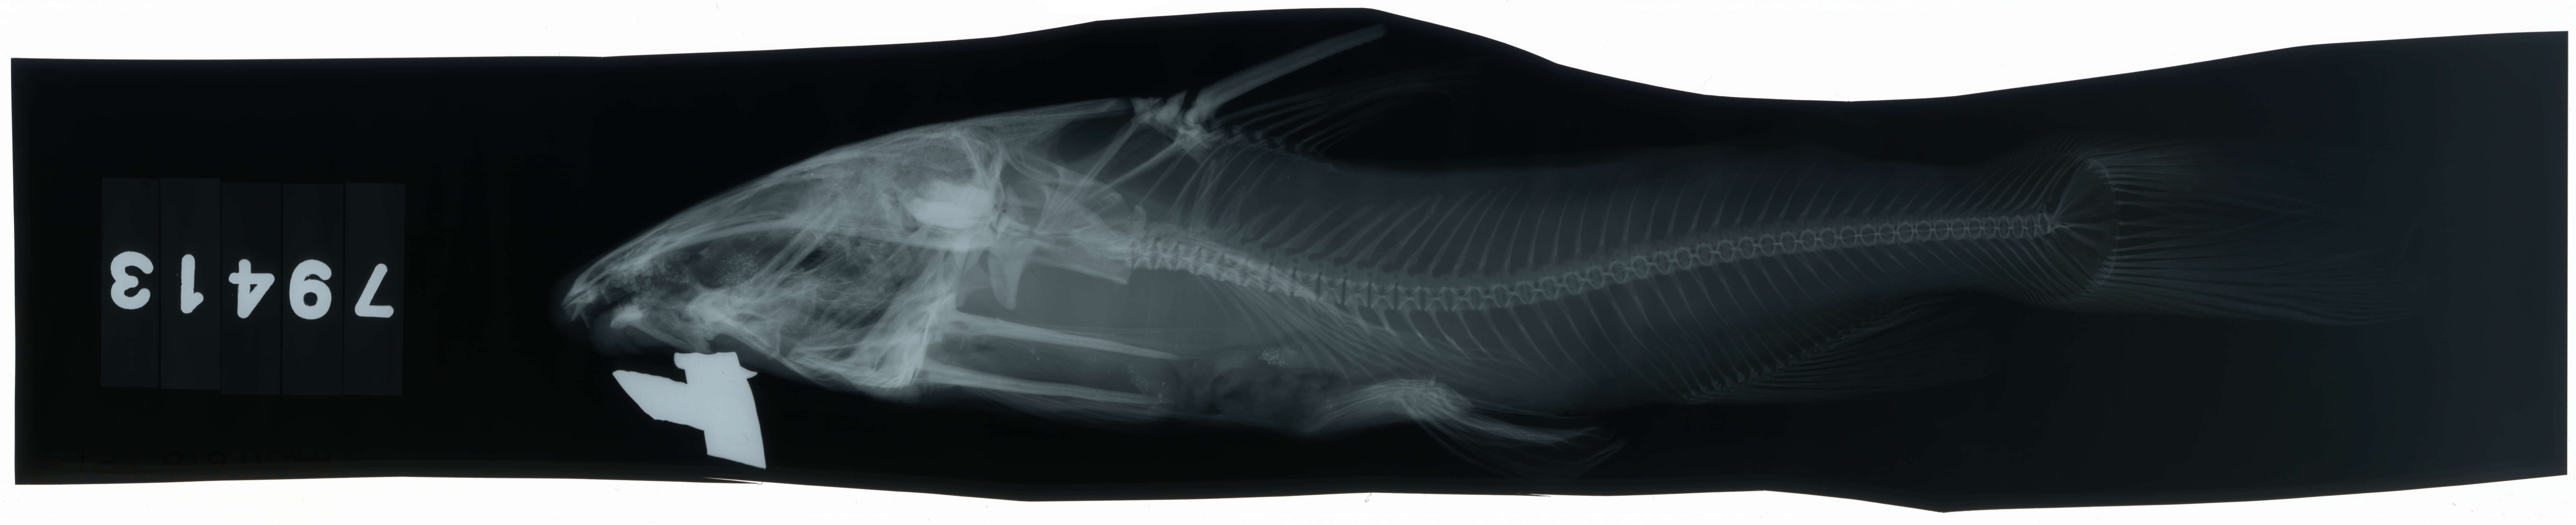 Image of Besudo sea catfish